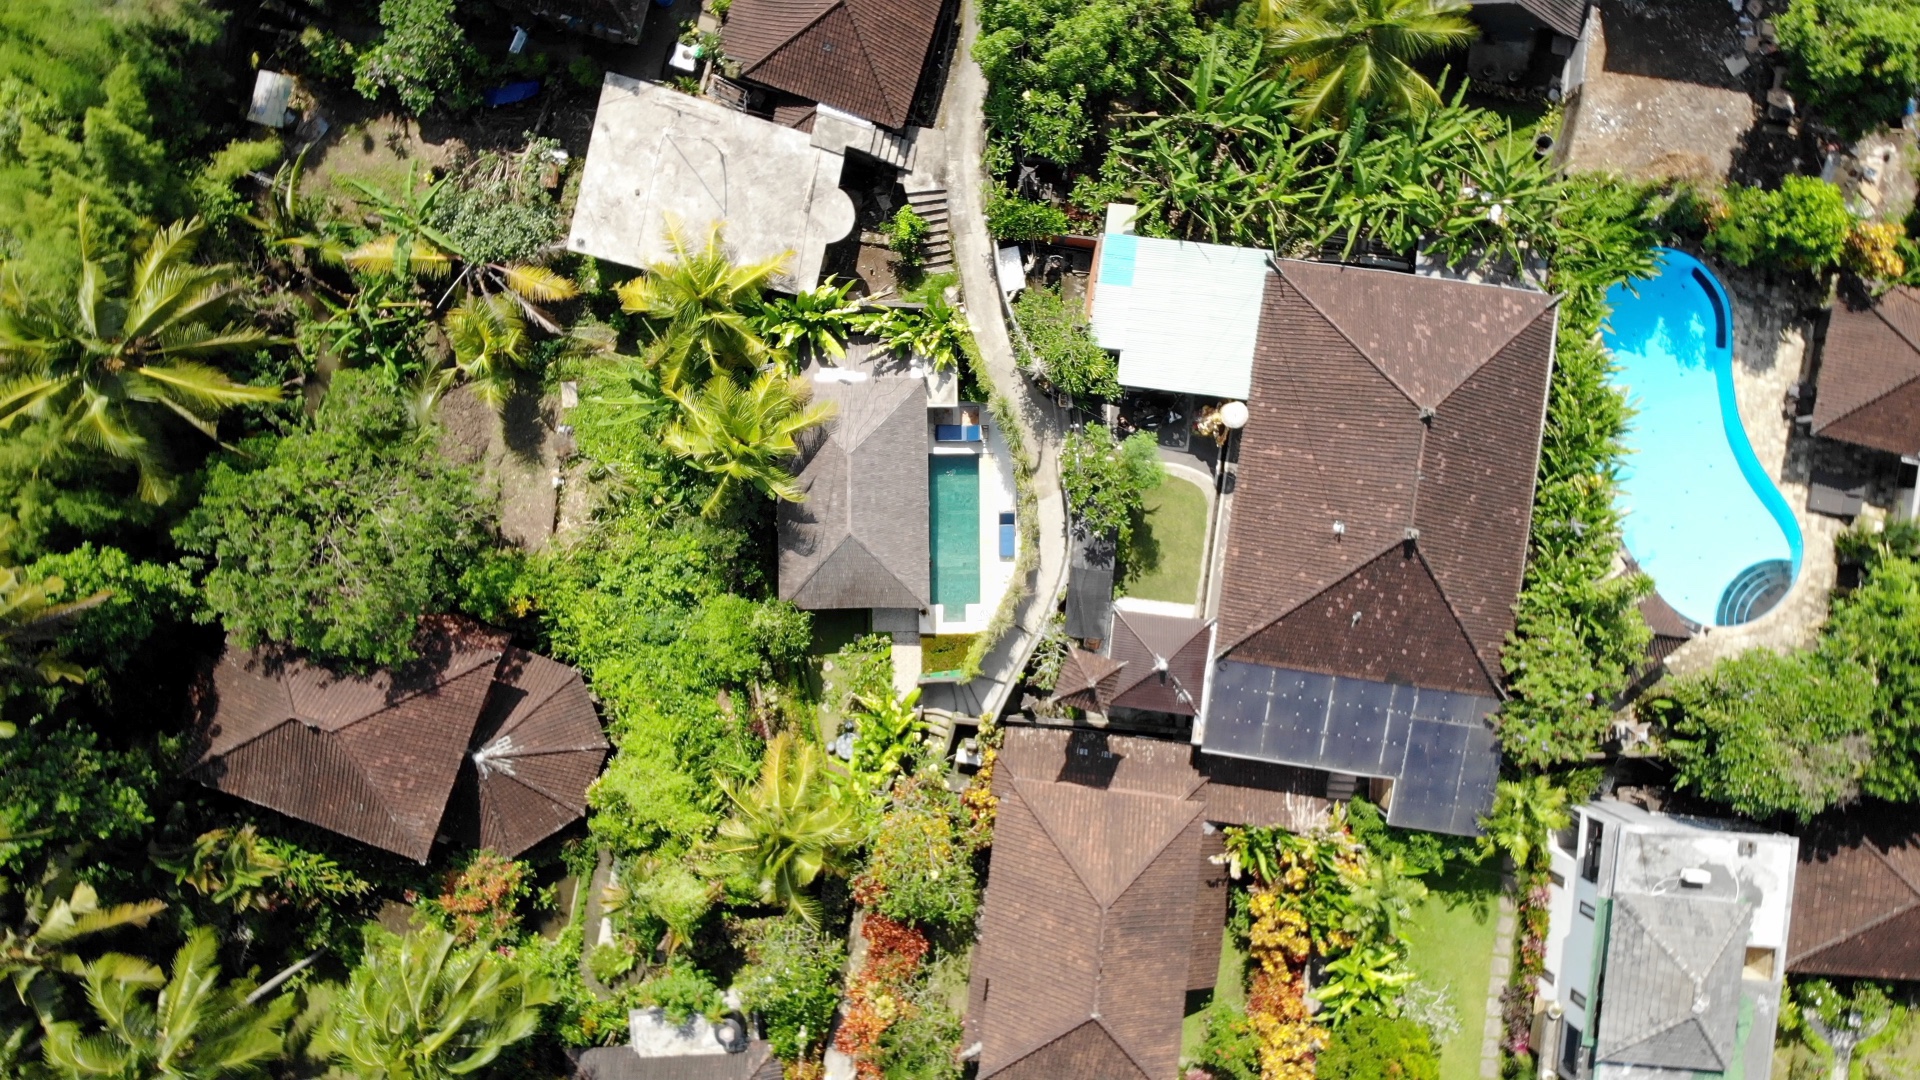 Drone Footage of Villas in Ubud, Bali